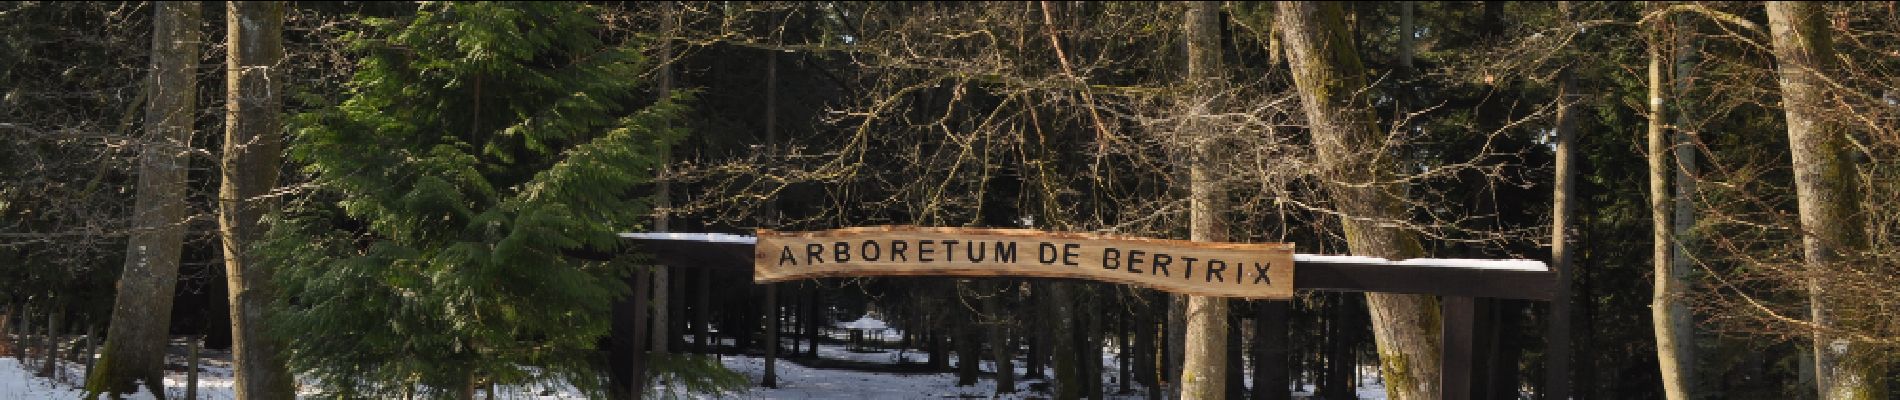 Point d'intérêt Bertrix - Possibilité de visiter un arboretum - Photo